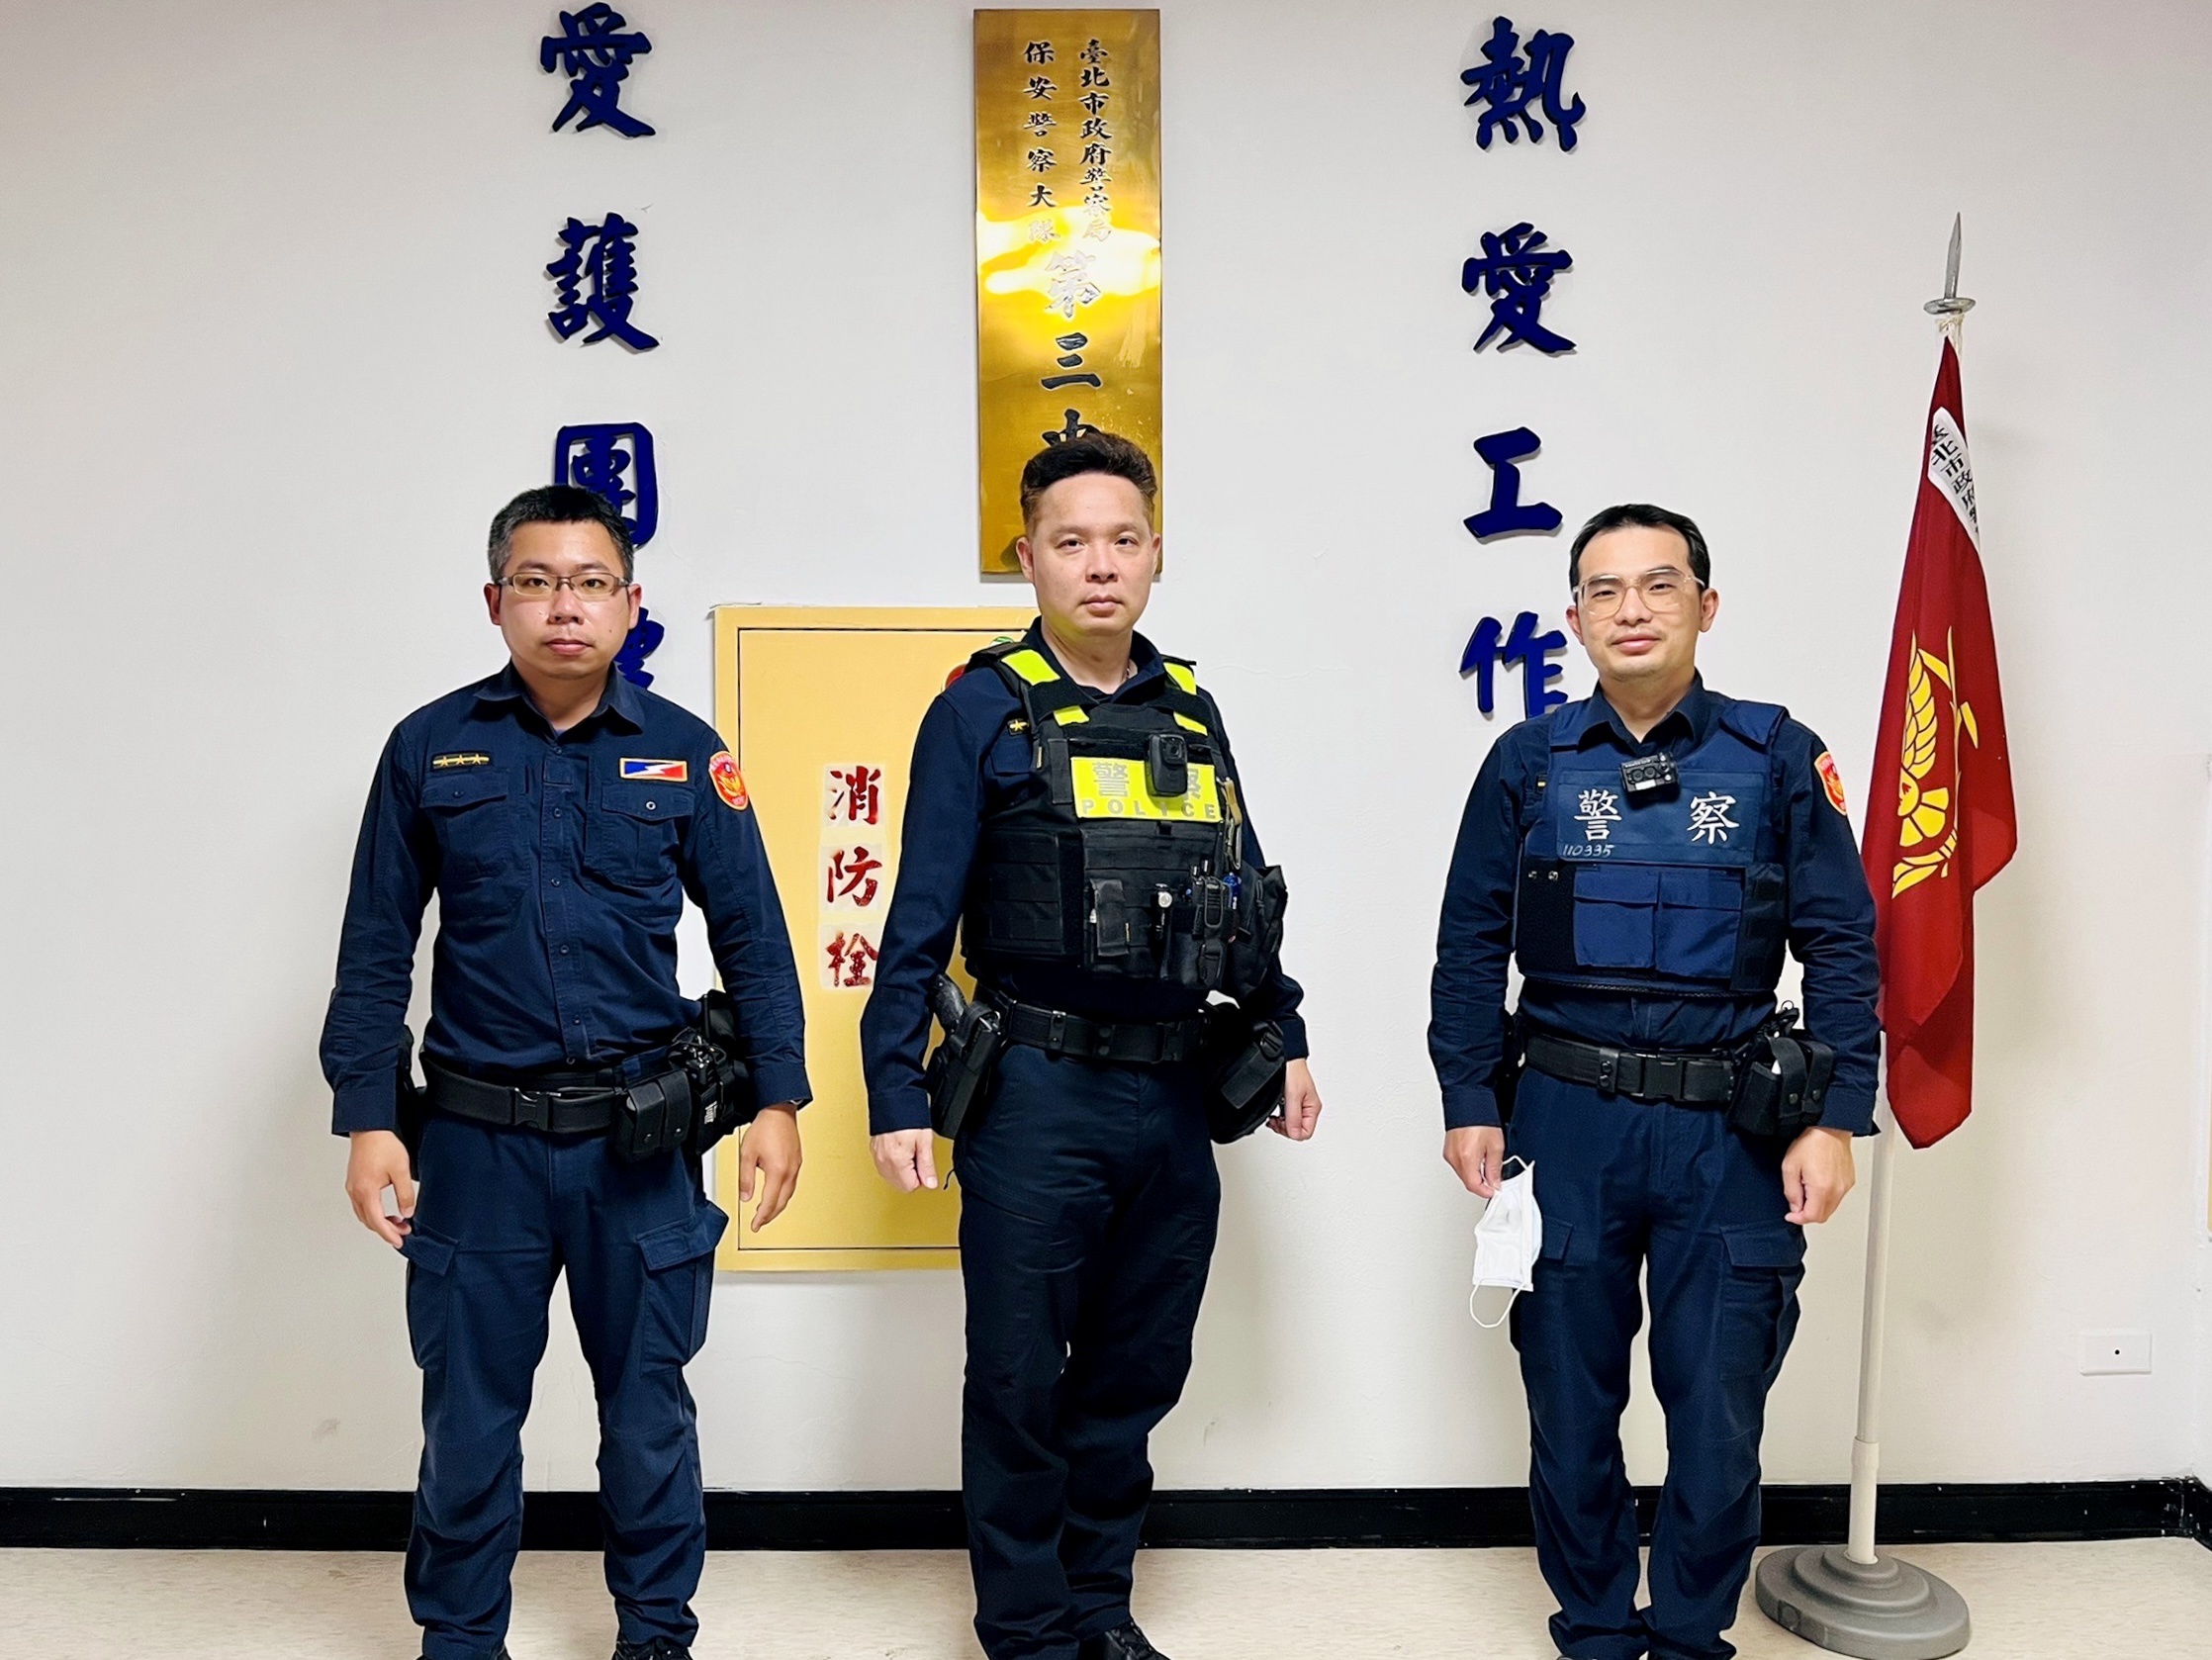 臺北市保安警察大隊第三中隊警員李翰翔、小隊長楊守滄、警員汪德偉等三人由左至右。